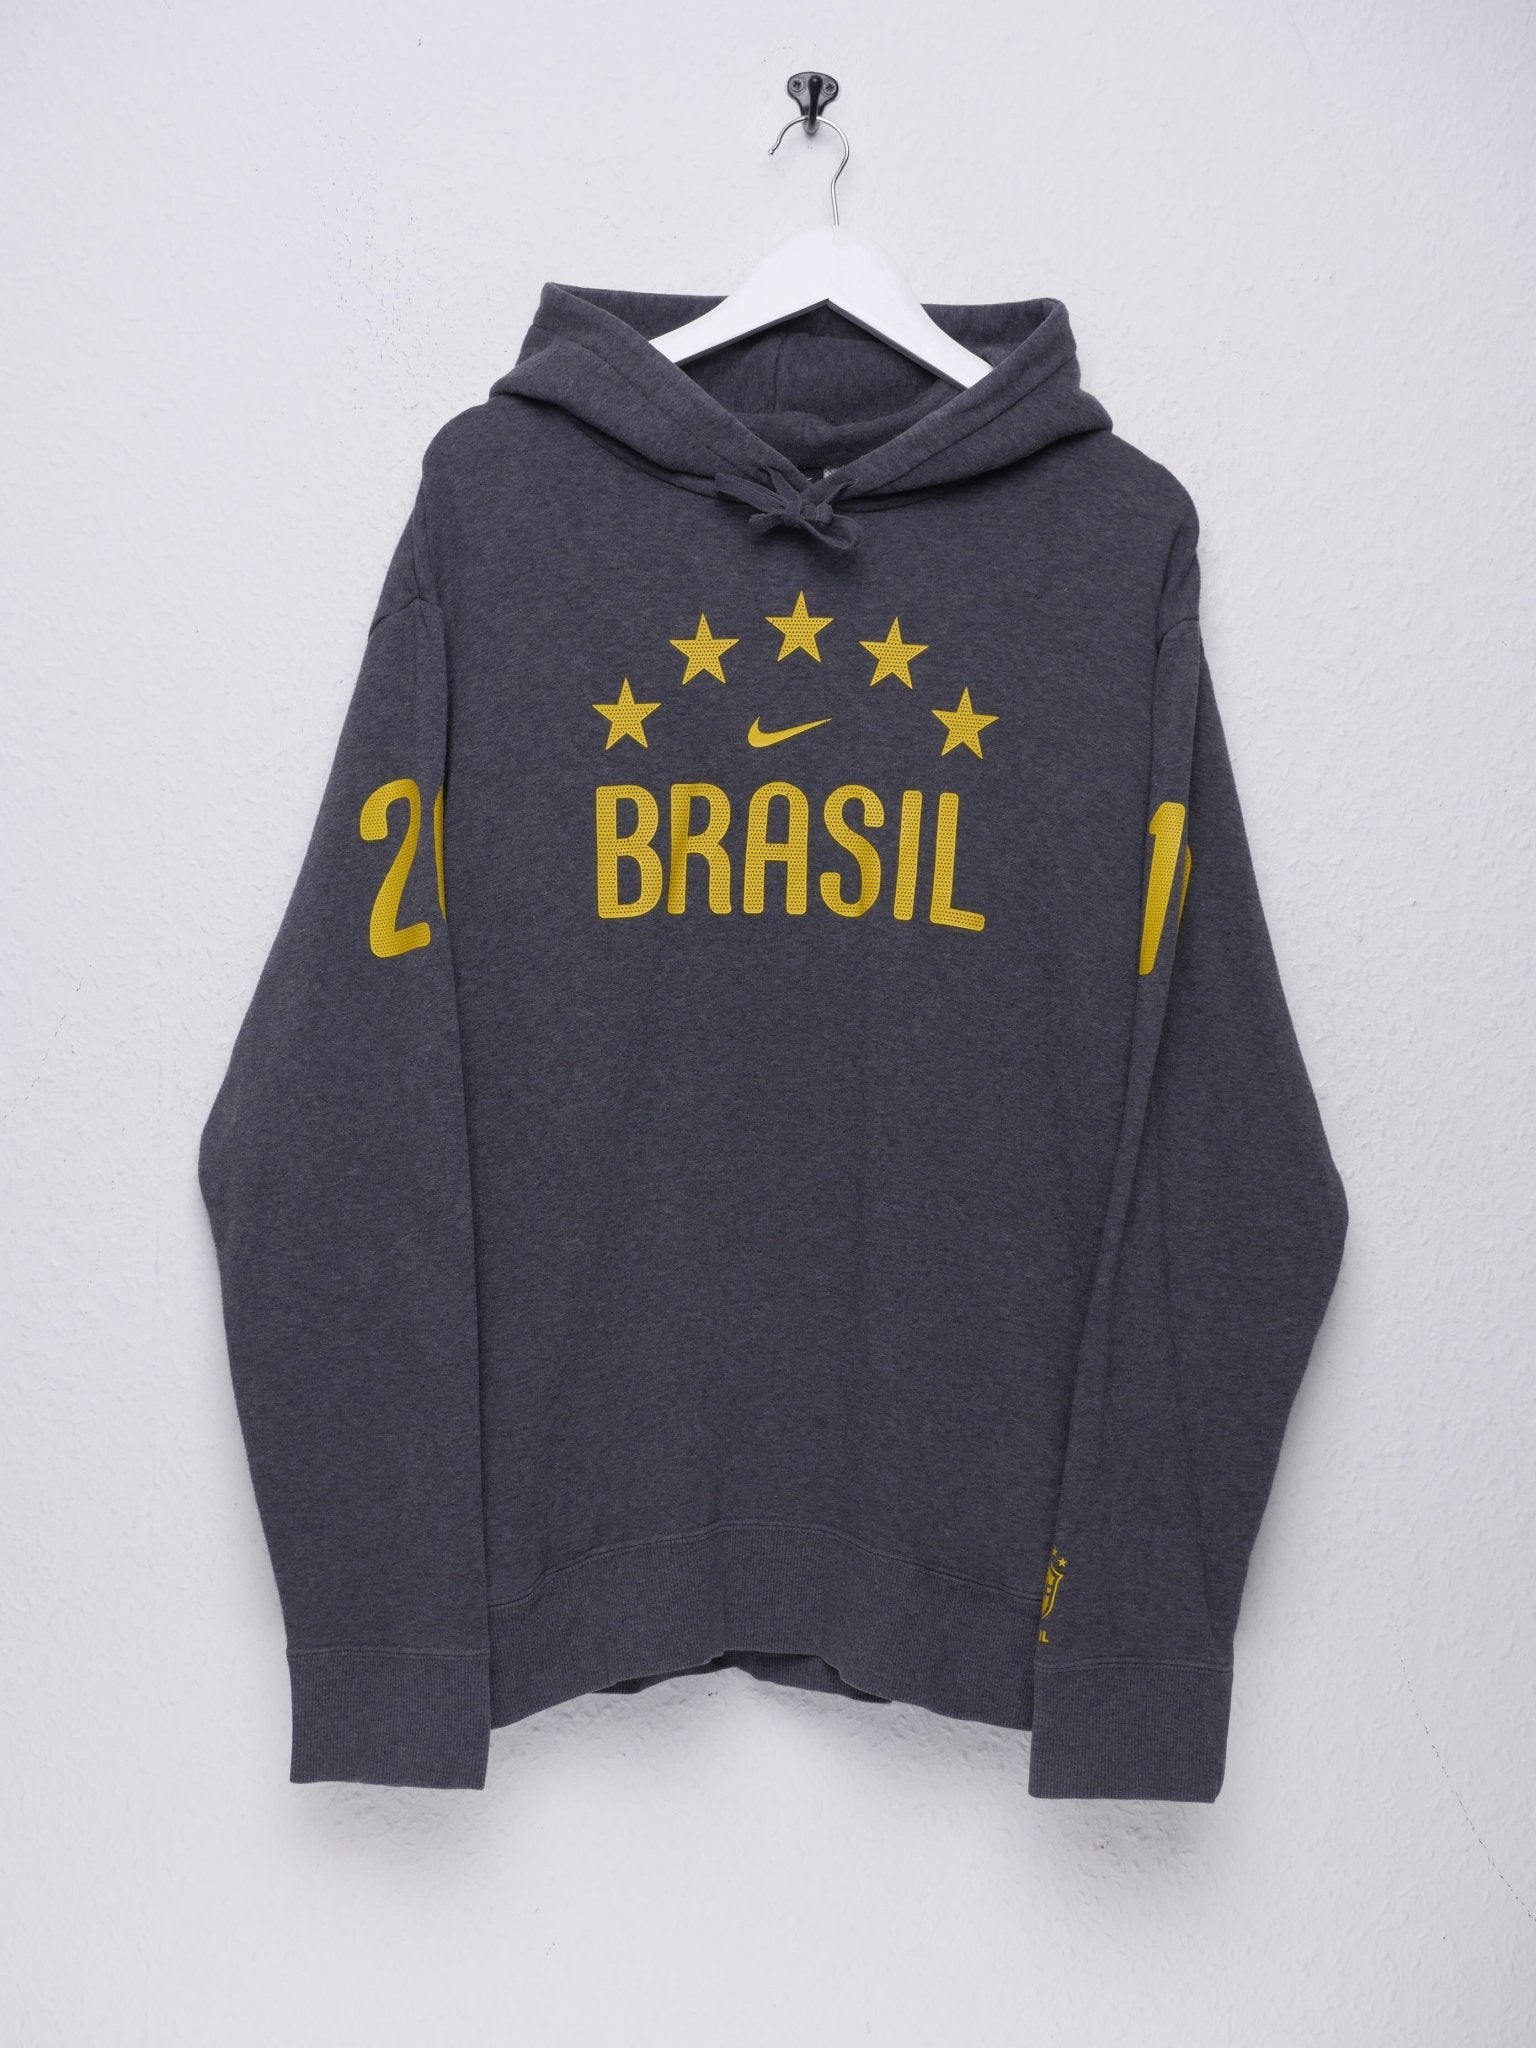 Nike 'Brasil' printed Logo grey Hoodie - Peeces